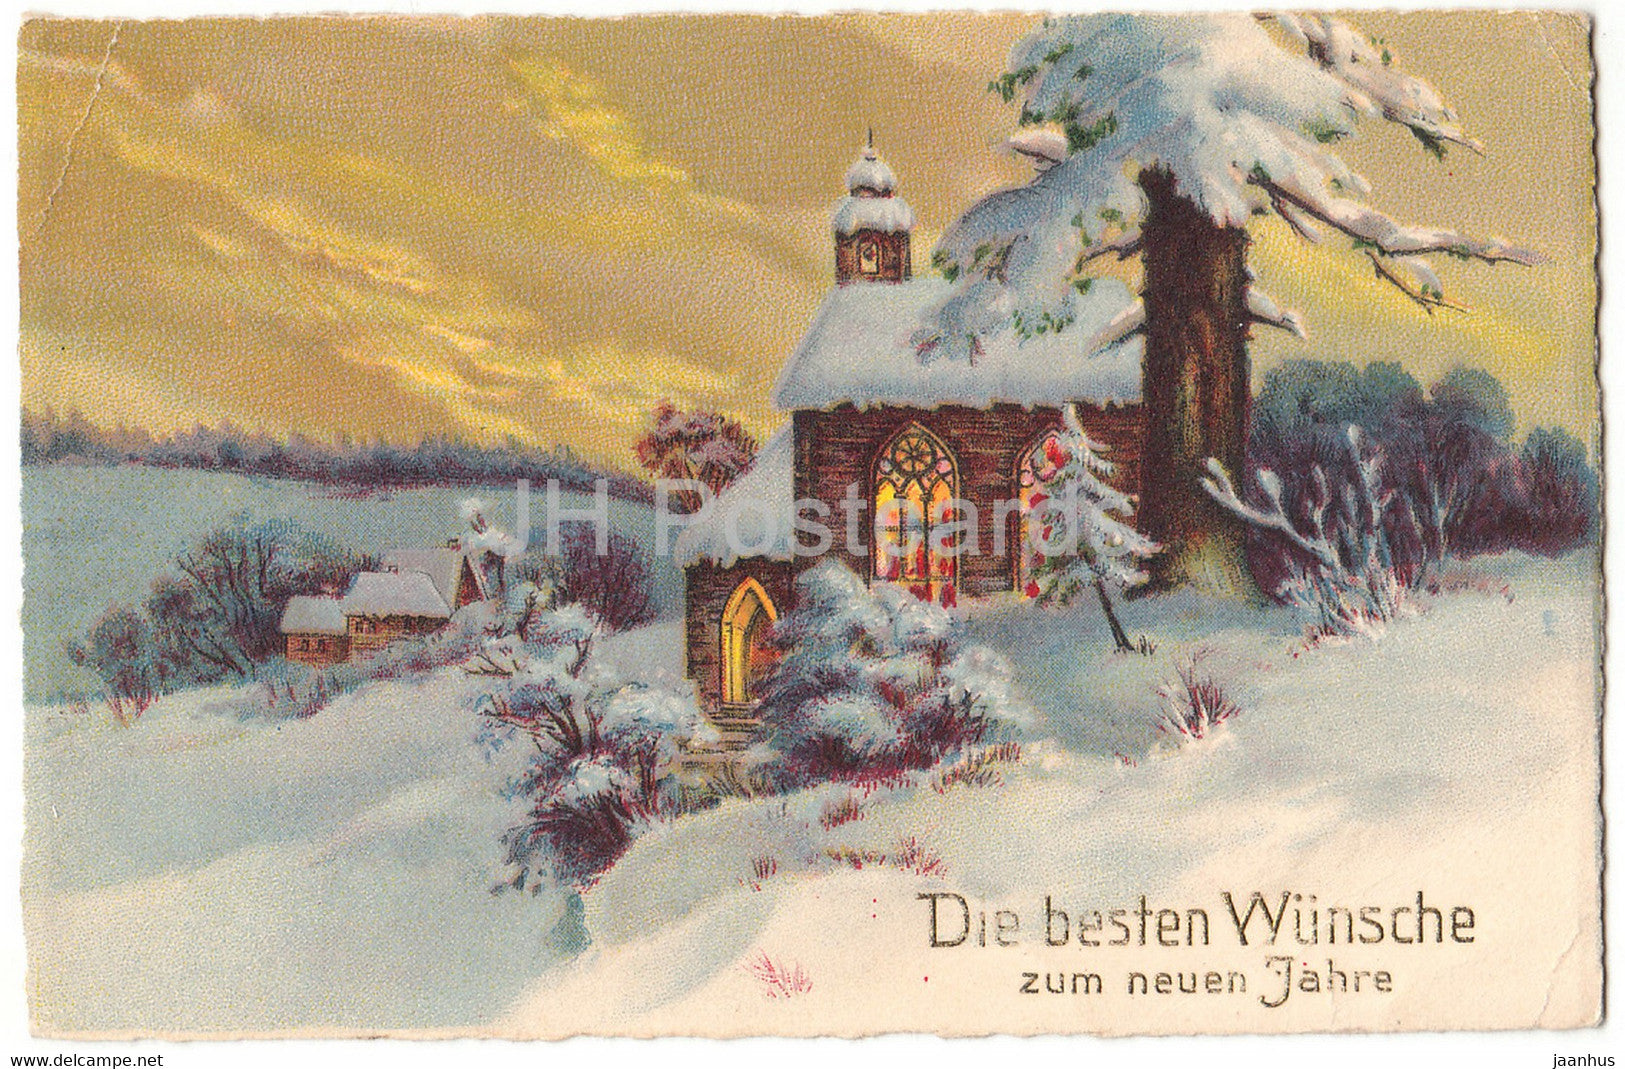 New Year Greeting Card - Die Besten Wunsche zum neuen Jahre - ERIKA 6279 - old postcard - 1934 - Germany - used - JH Postcards